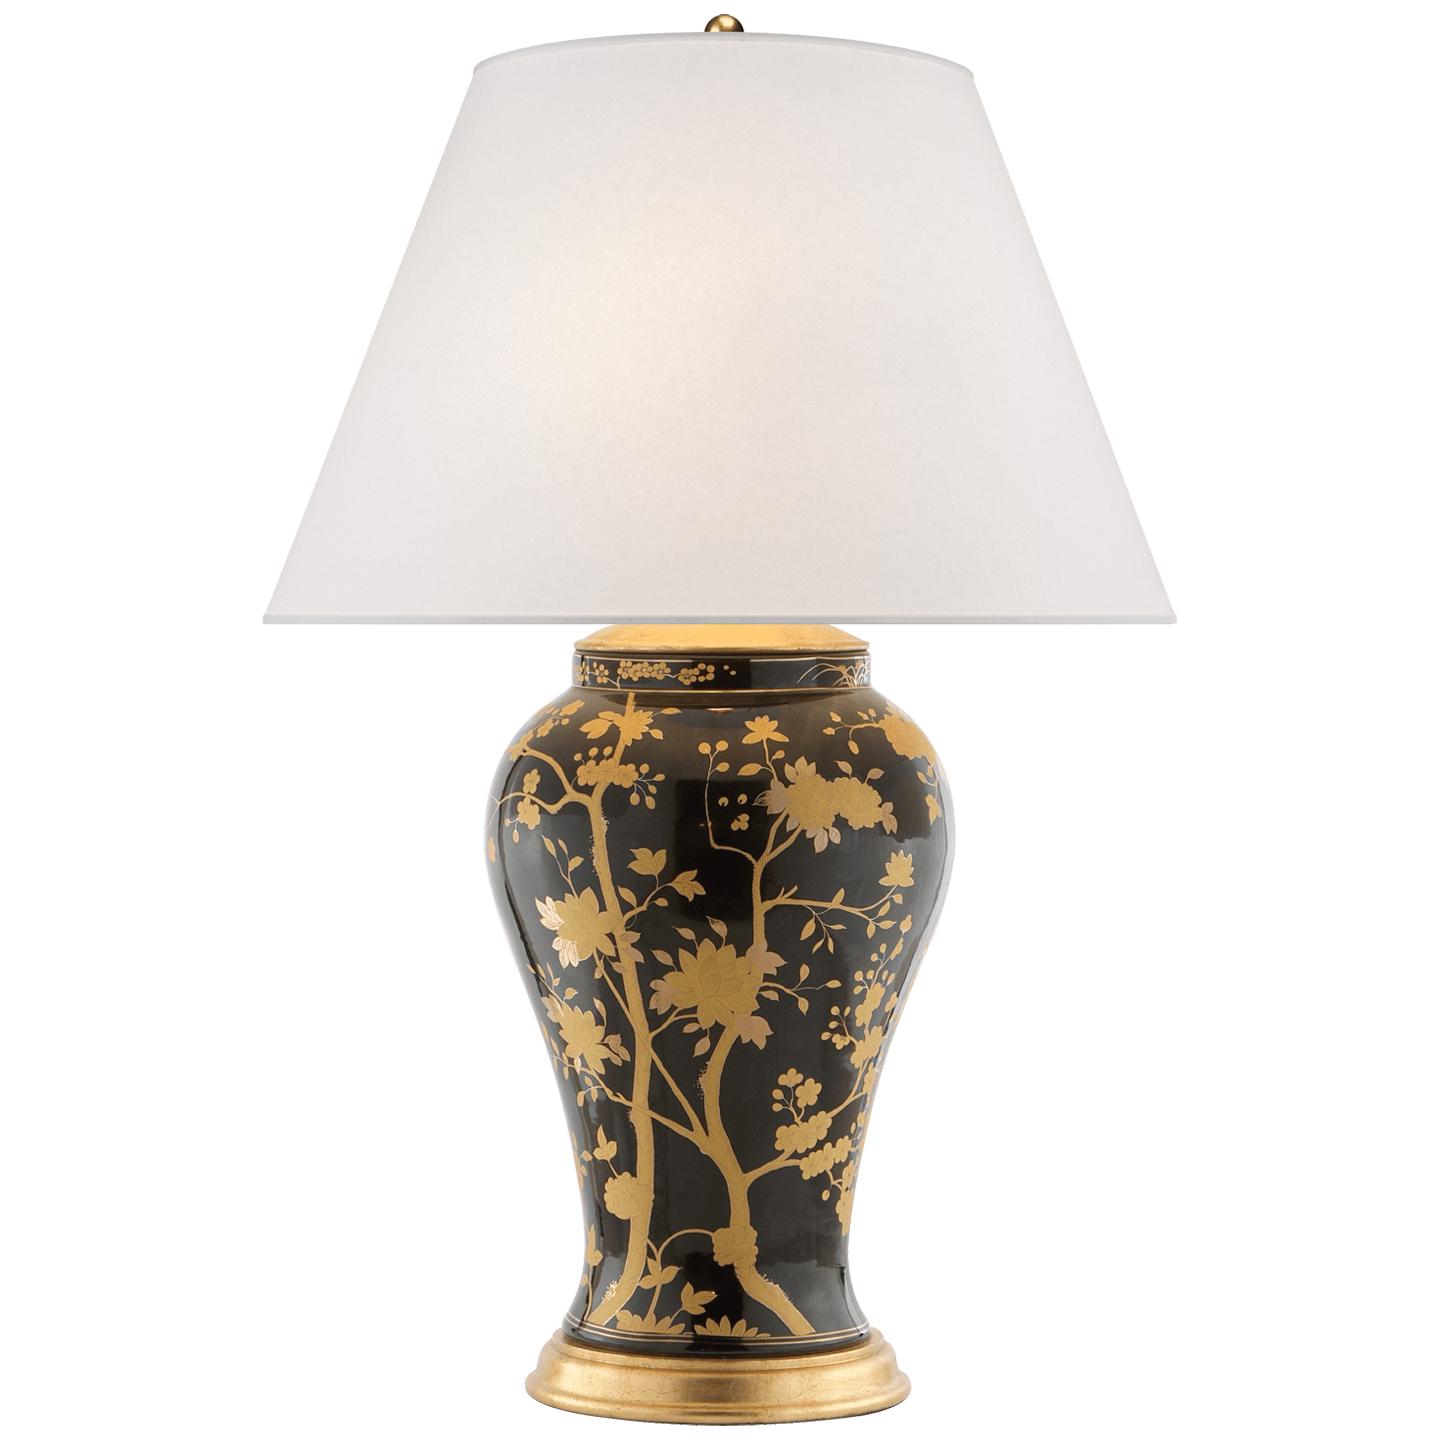 Купить Настольная лампа Gable Table Lamp в интернет-магазине roooms.ru